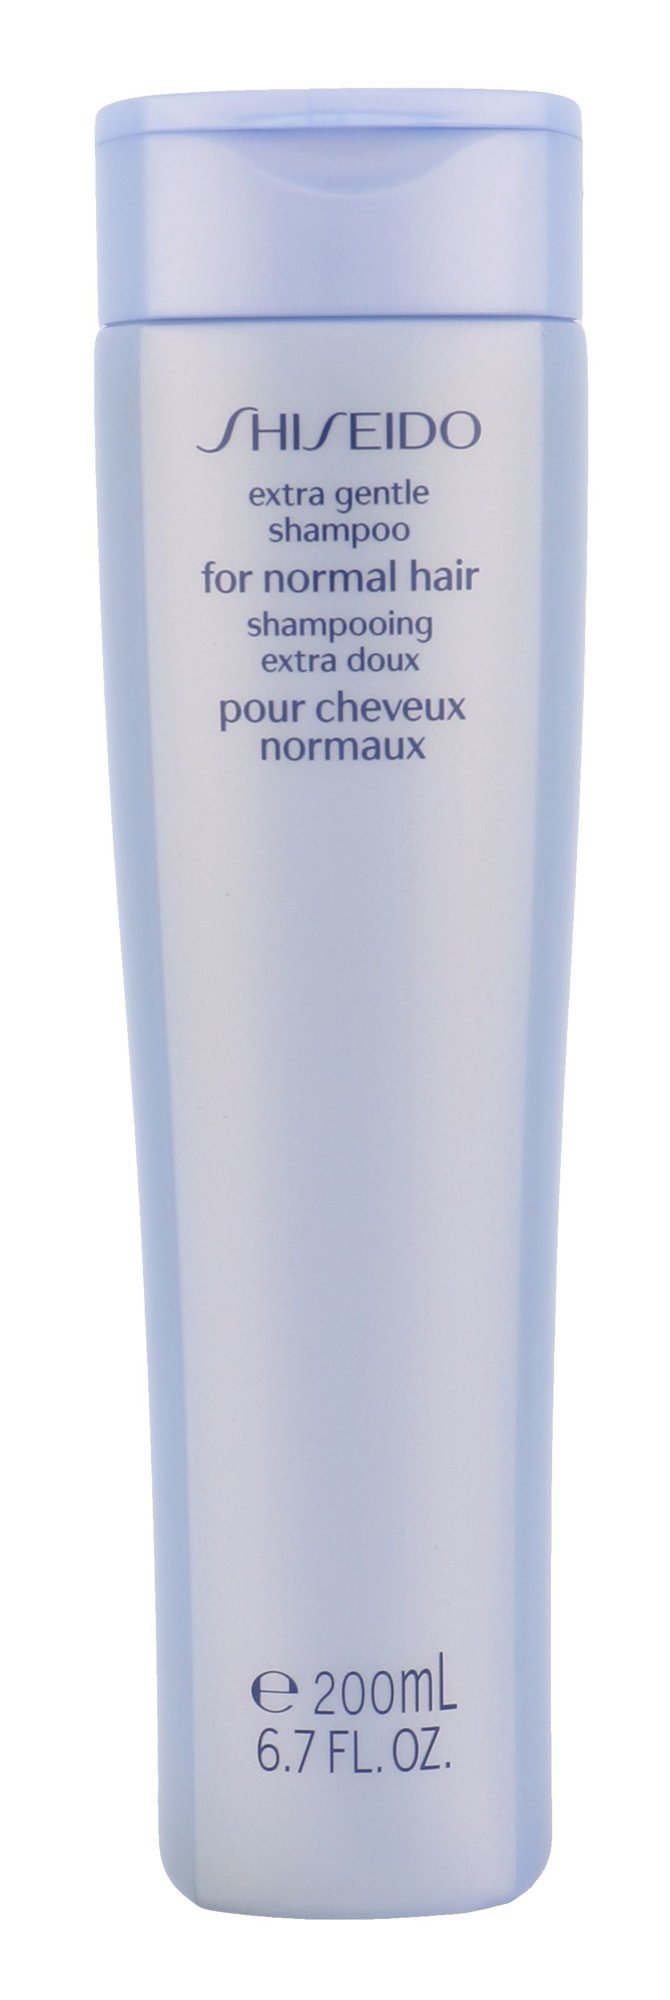 Shiseido Extra Gentle šampūnas